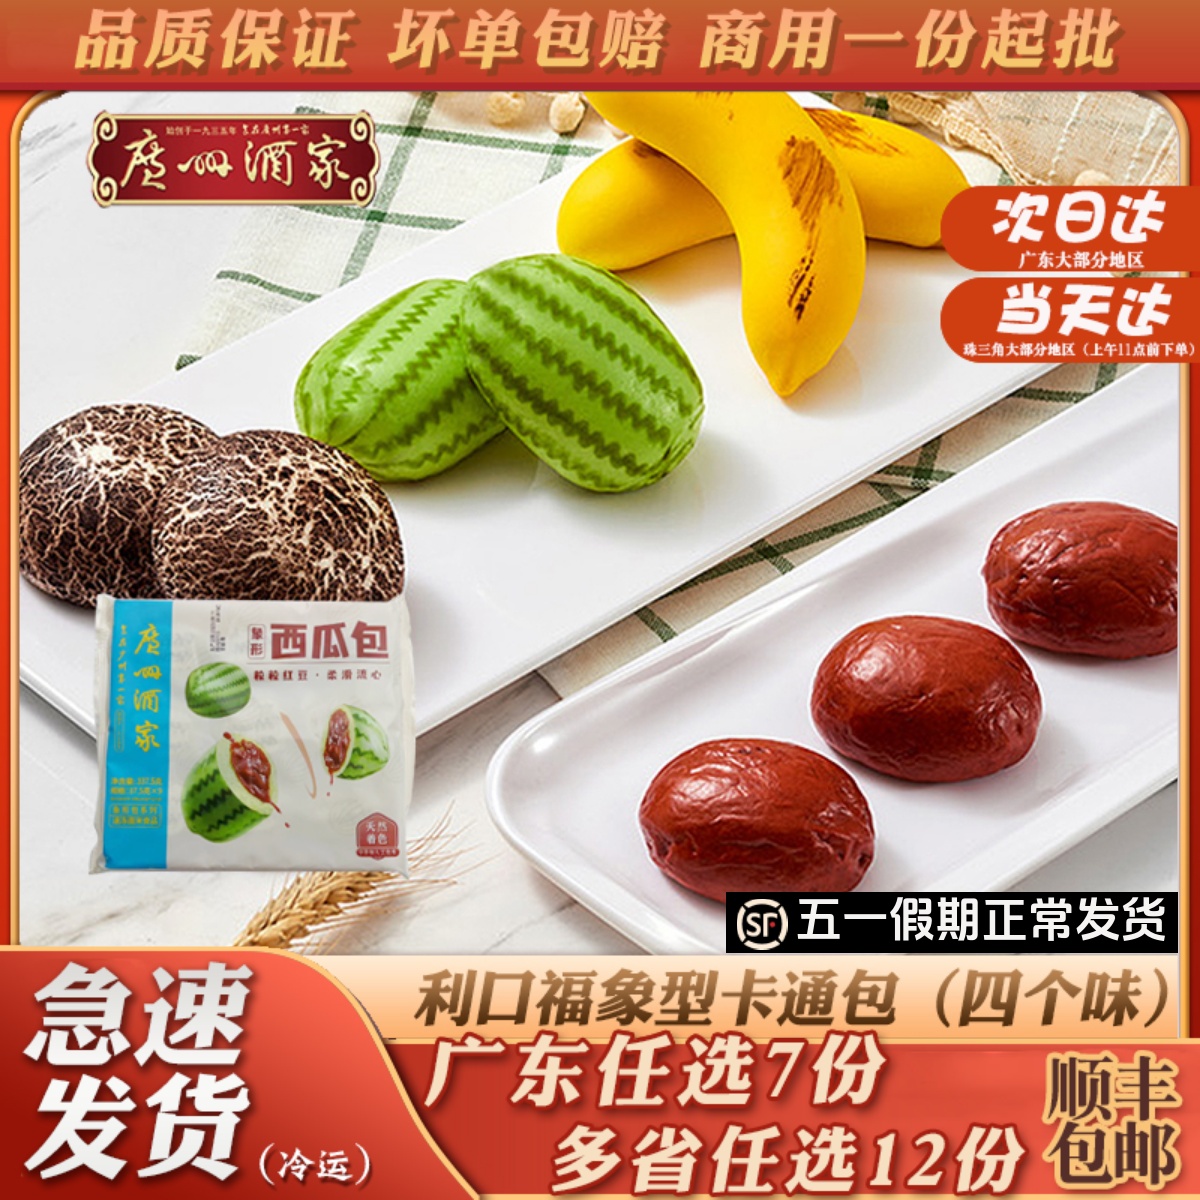 广州酒家利口福象型卡通包红枣西瓜香蕉蘑菇速冻包子儿童营养早餐